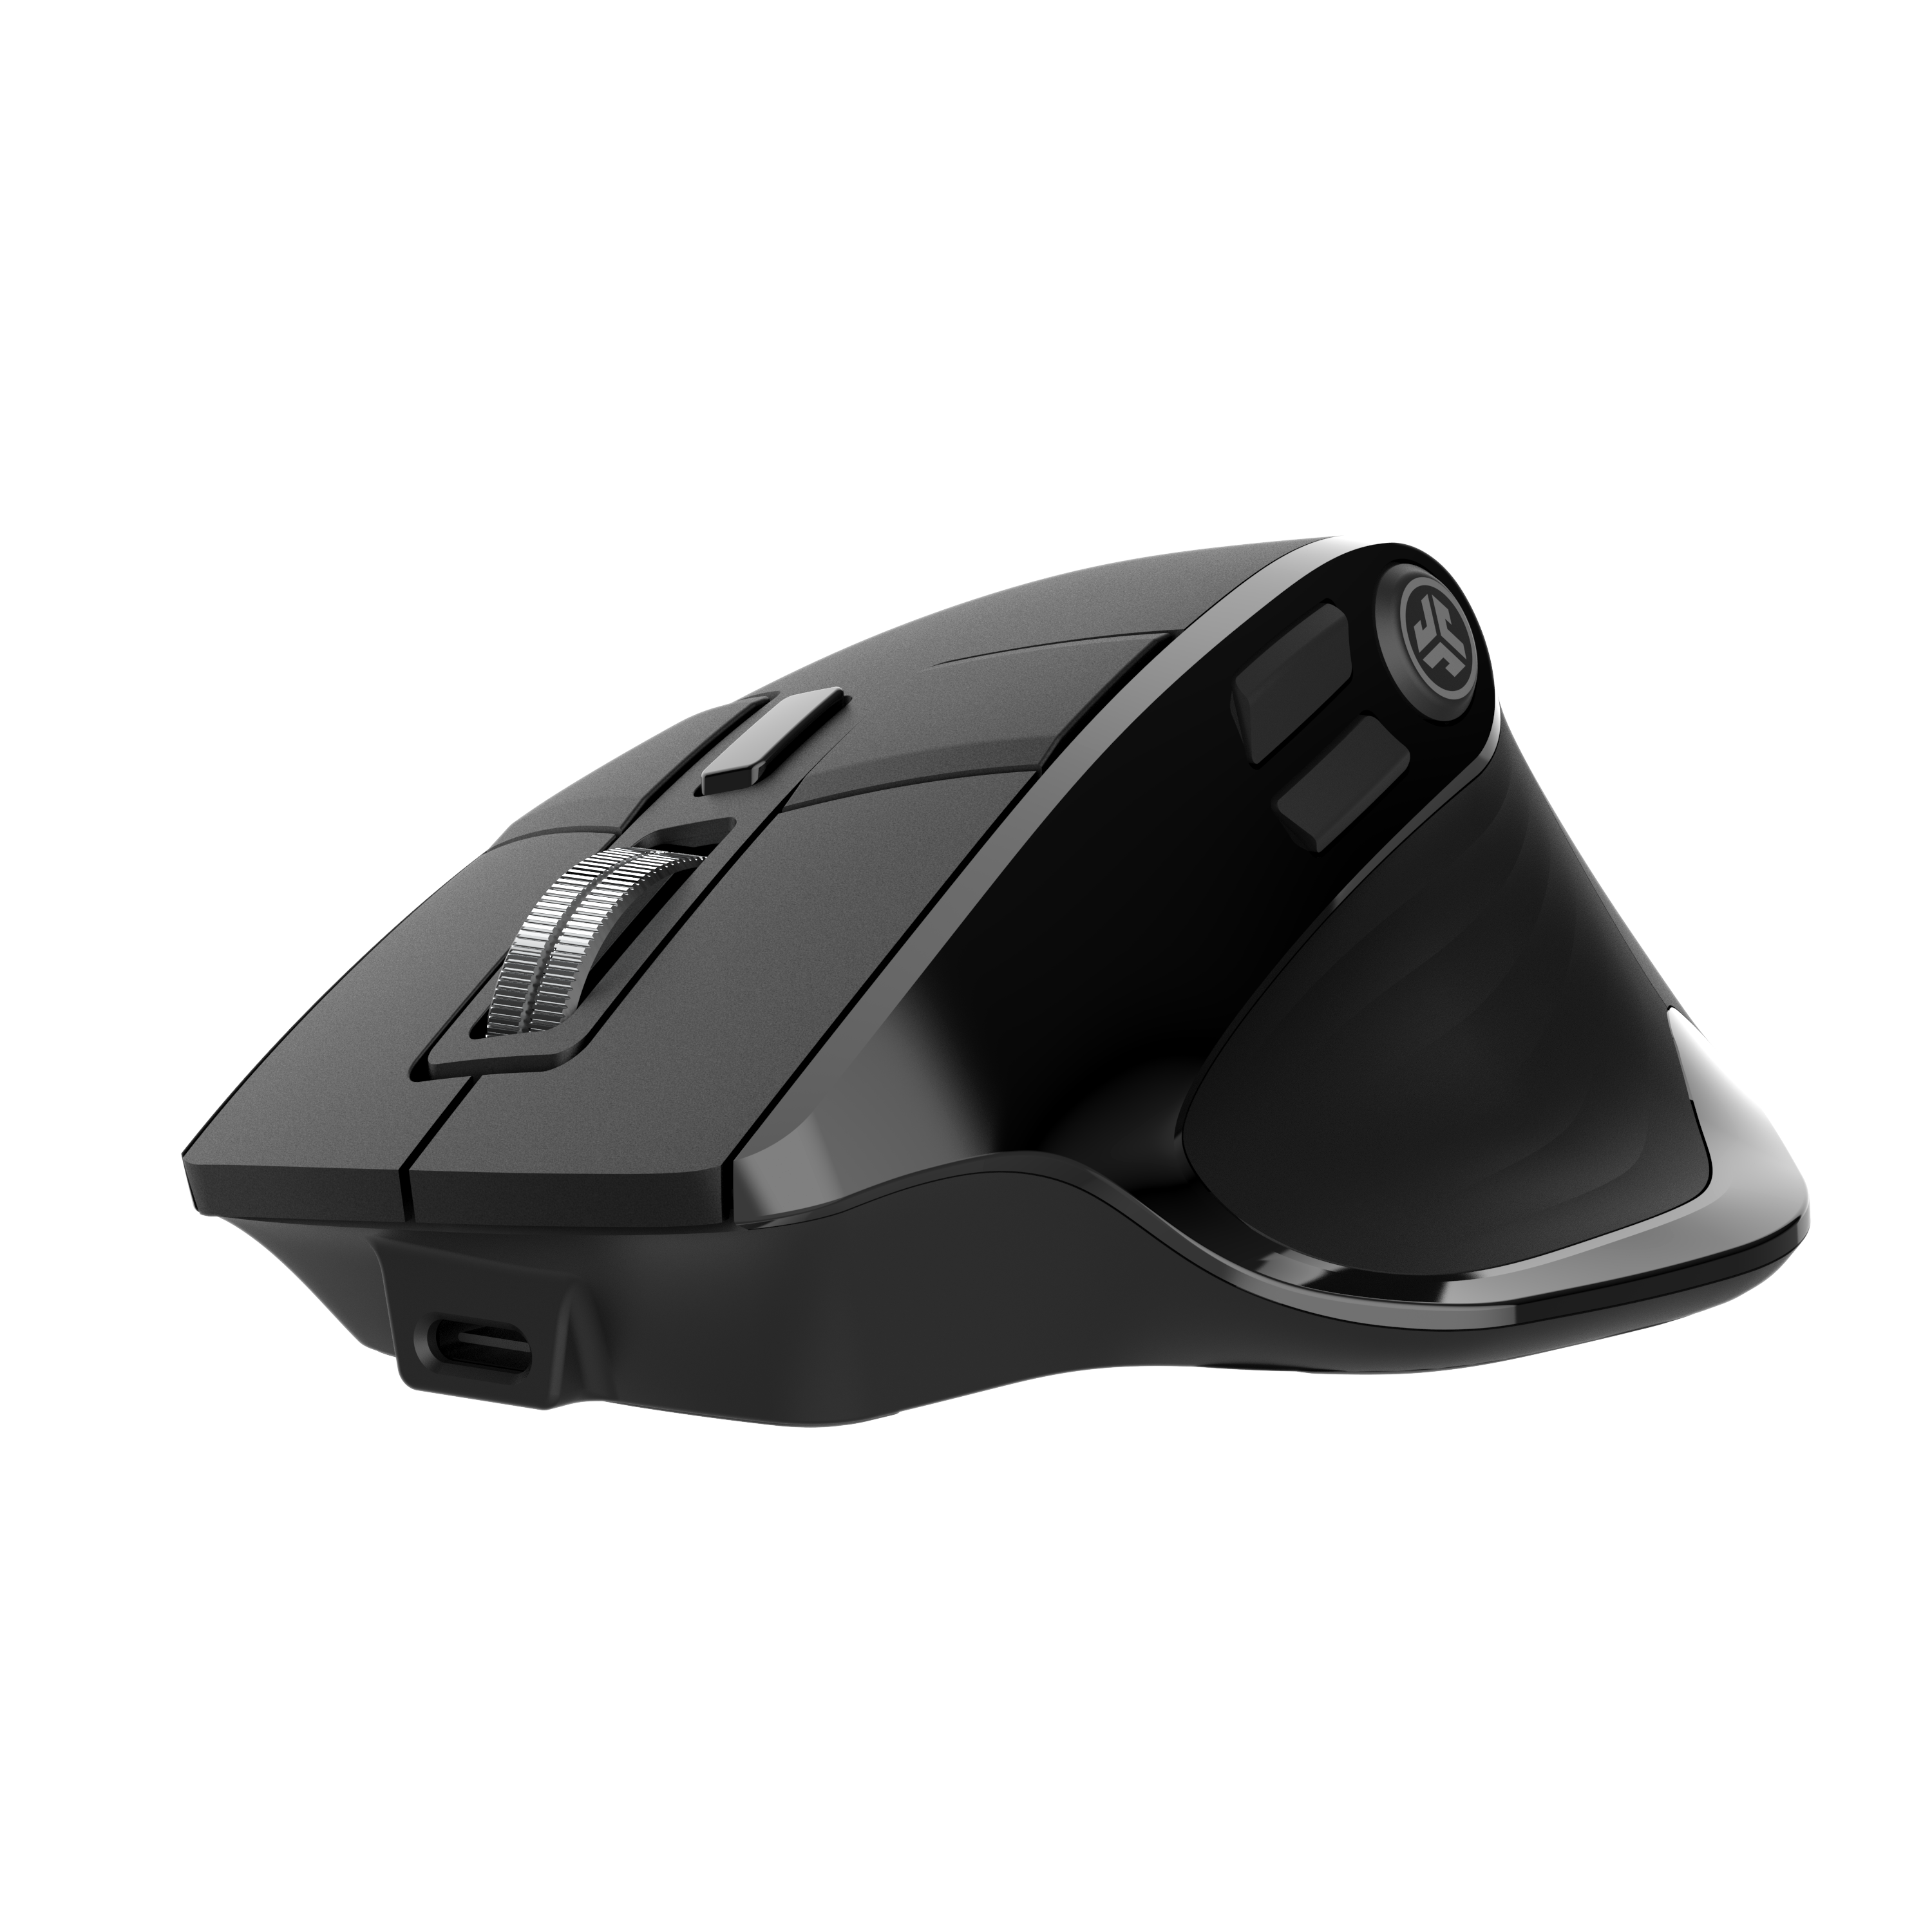 Chuột JLab không dây Bluetooth pin sạc Epic màu đen - Hàng chính hãng - Bảo hành 2 năm